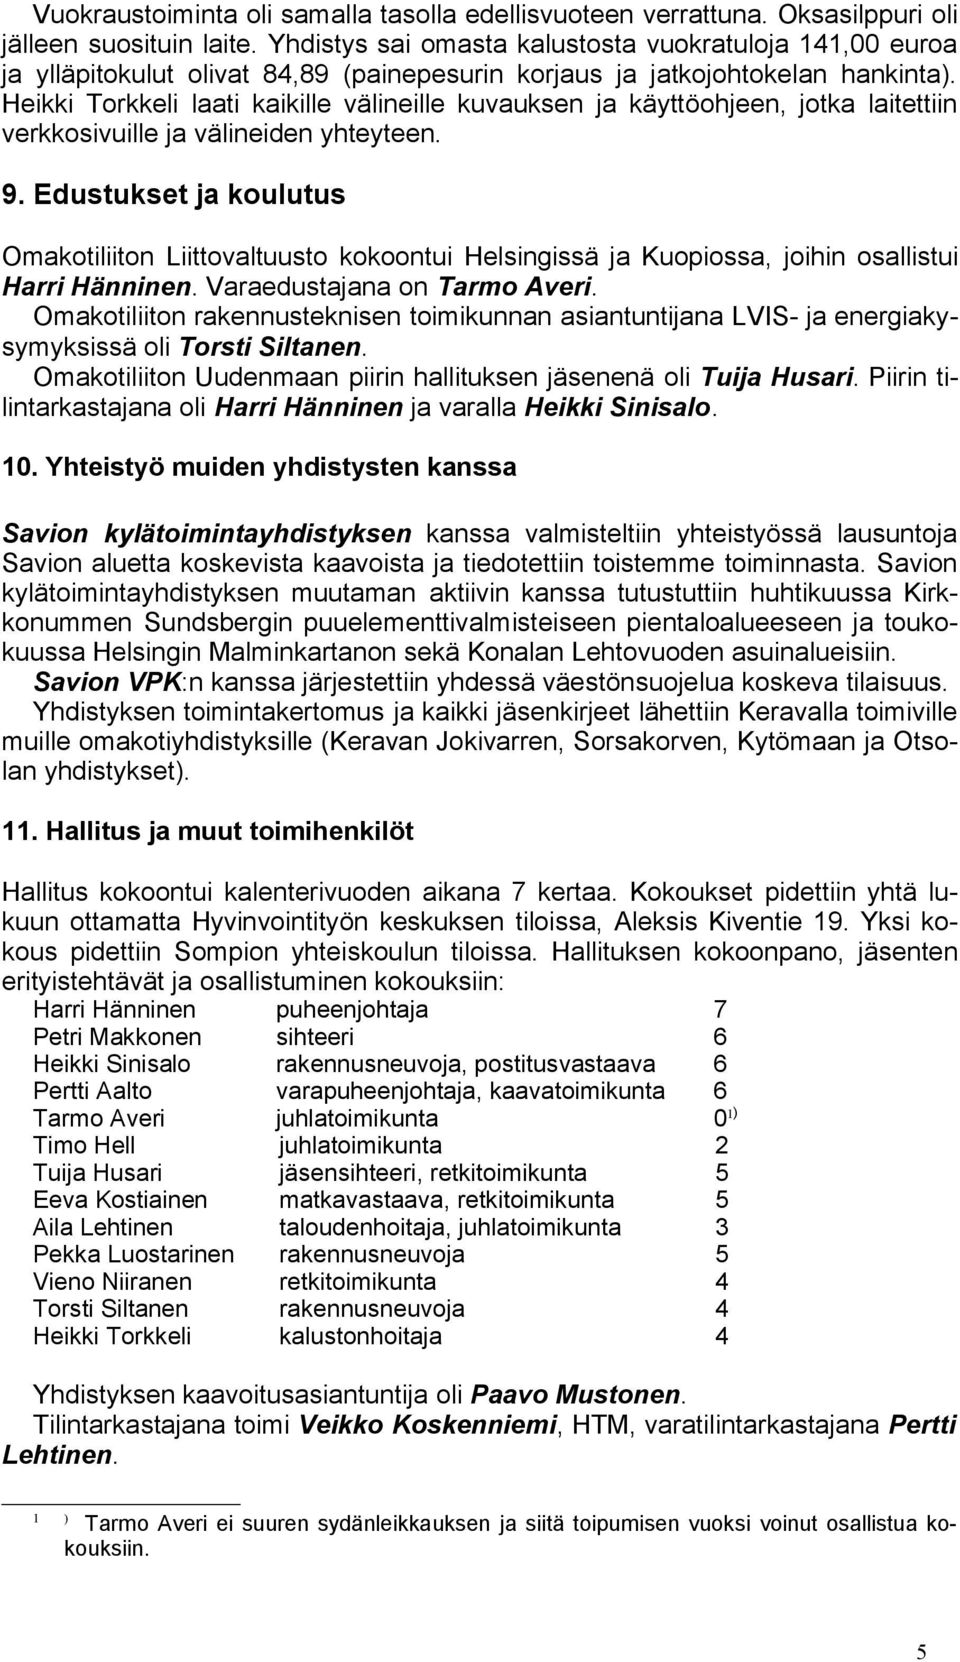 Heikki Torkkeli laati kaikille välineille kuvauksen ja käyttöohjeen, jotka laitettiin verkkosivuille ja välineiden yhteyteen. 9.